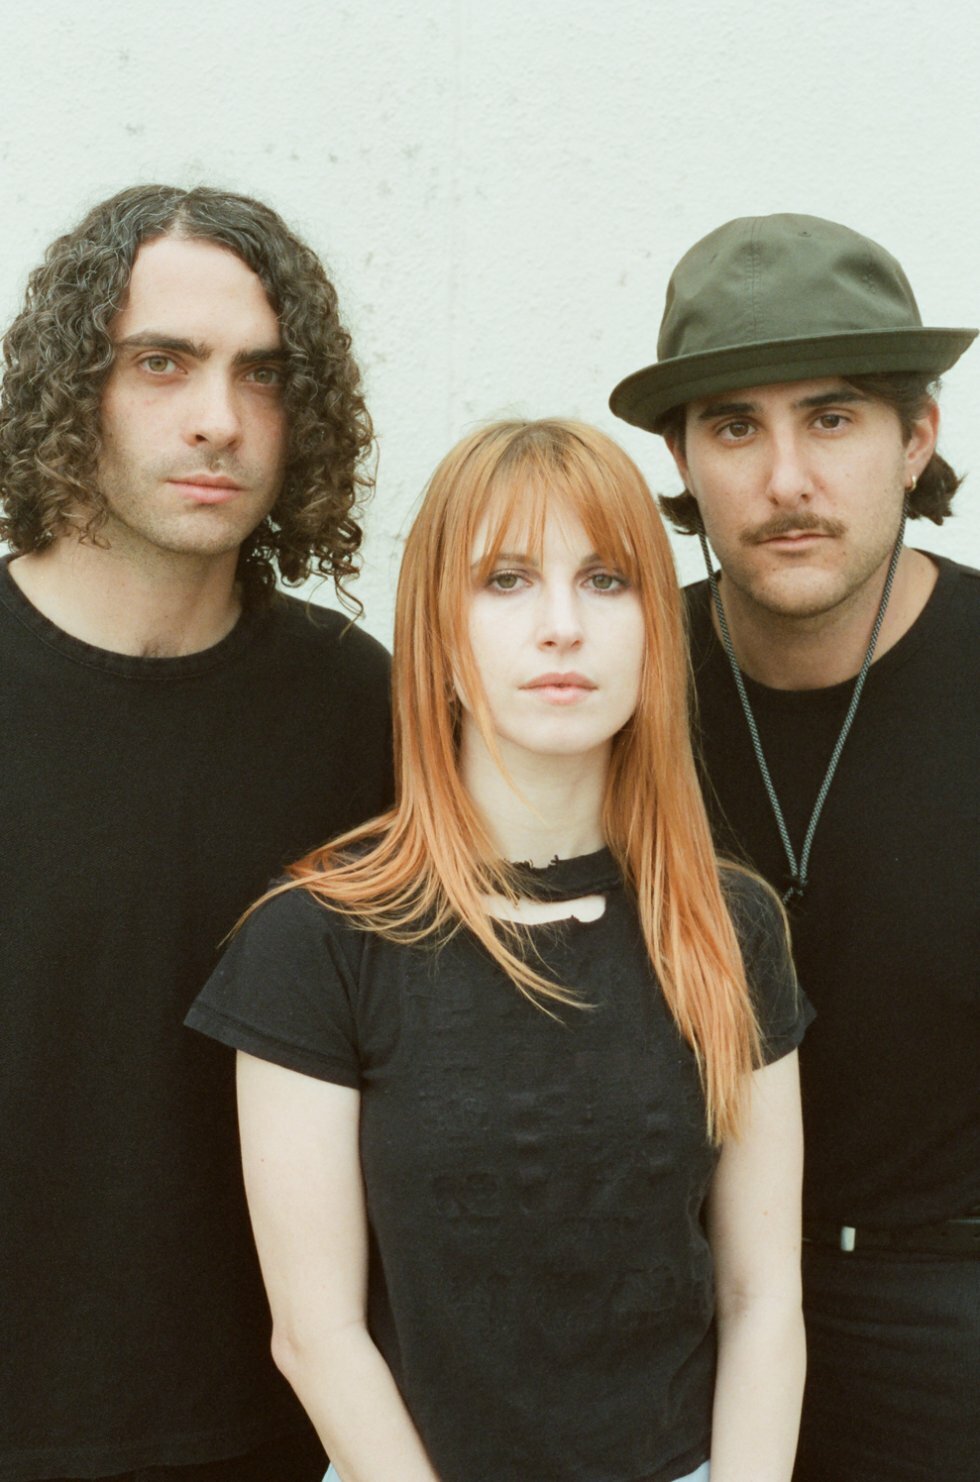 Paramore - 00'ernes emo-glade pop-punk band - er tilbage med nyt album